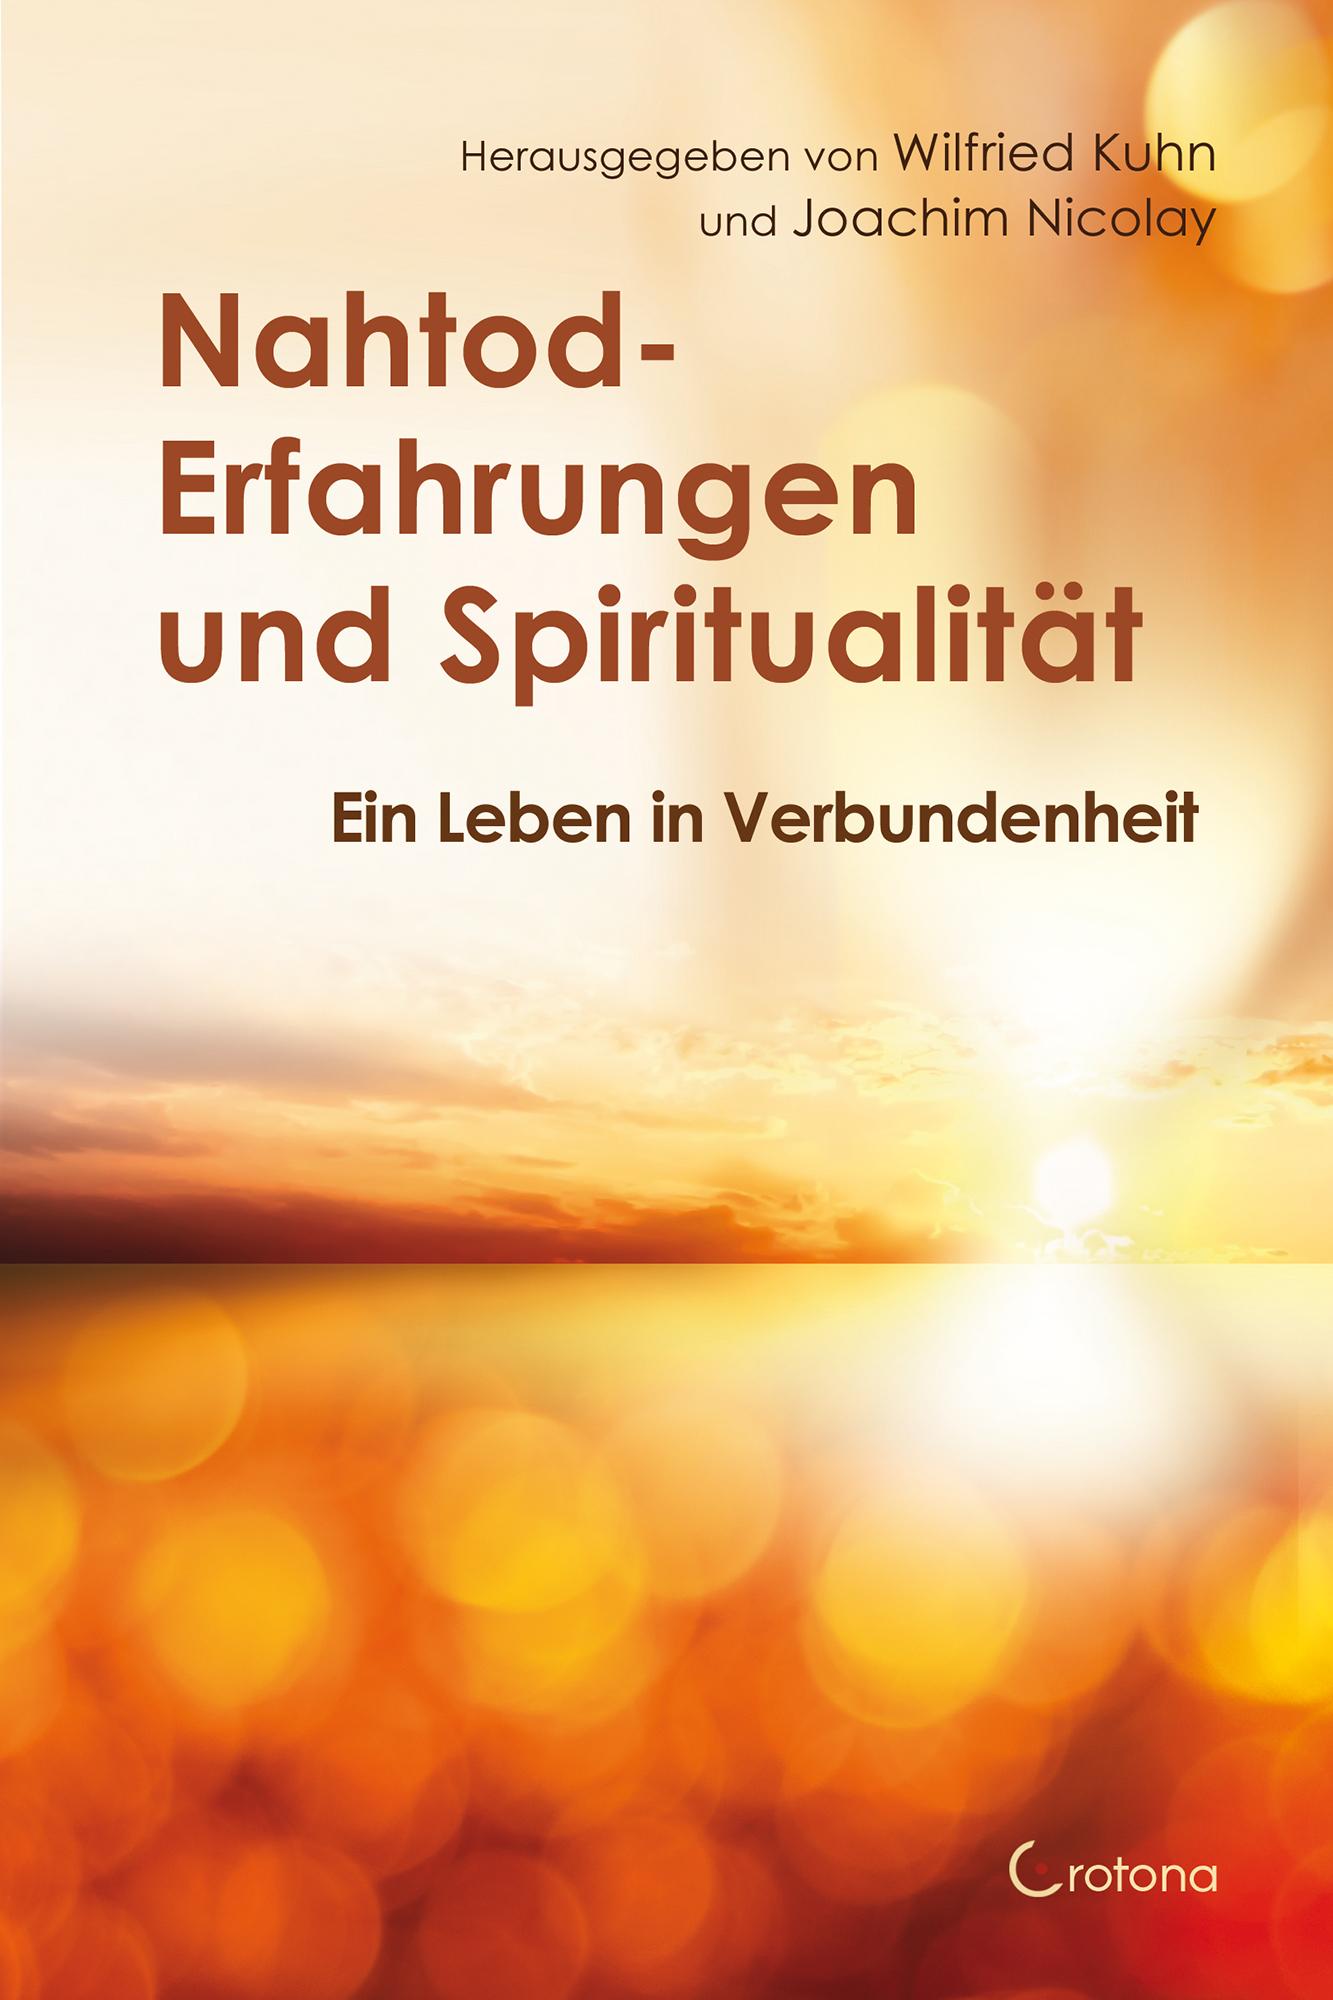 Nahtod-Erfahrungen und Spiritualität (Joachim Nicolay Wilfried Kuhn Deutsch) Galaxus